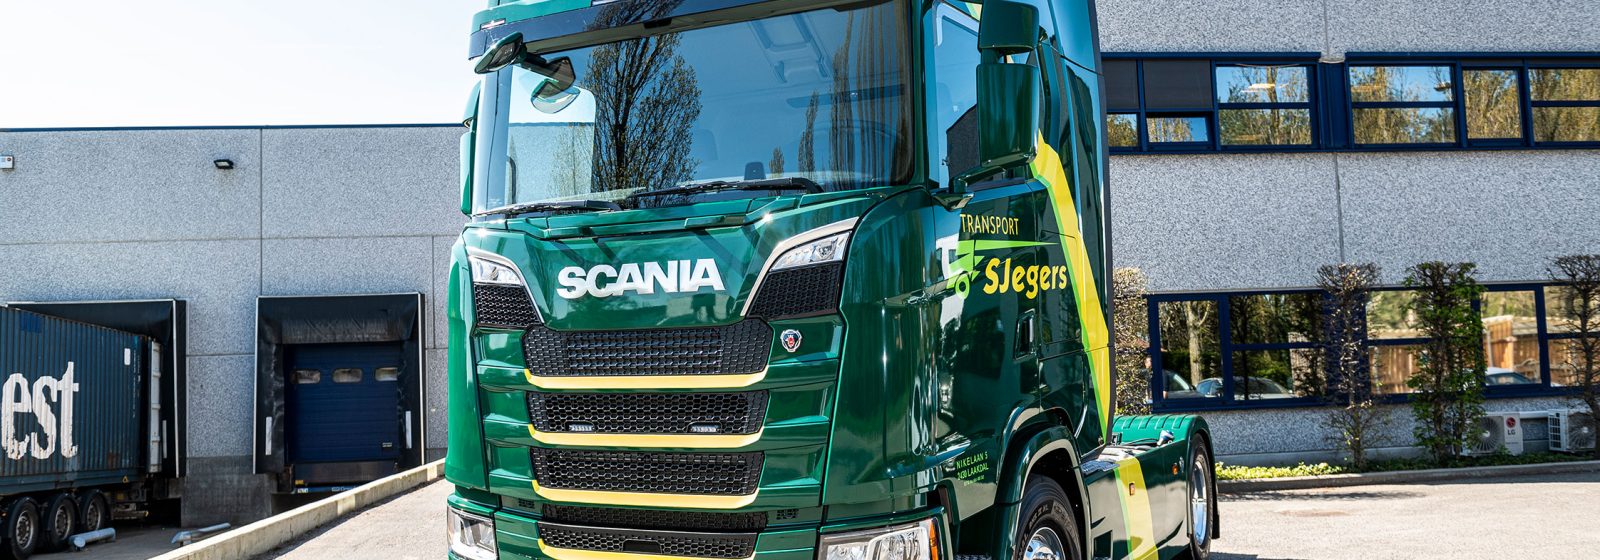 Scania van S'Jegers